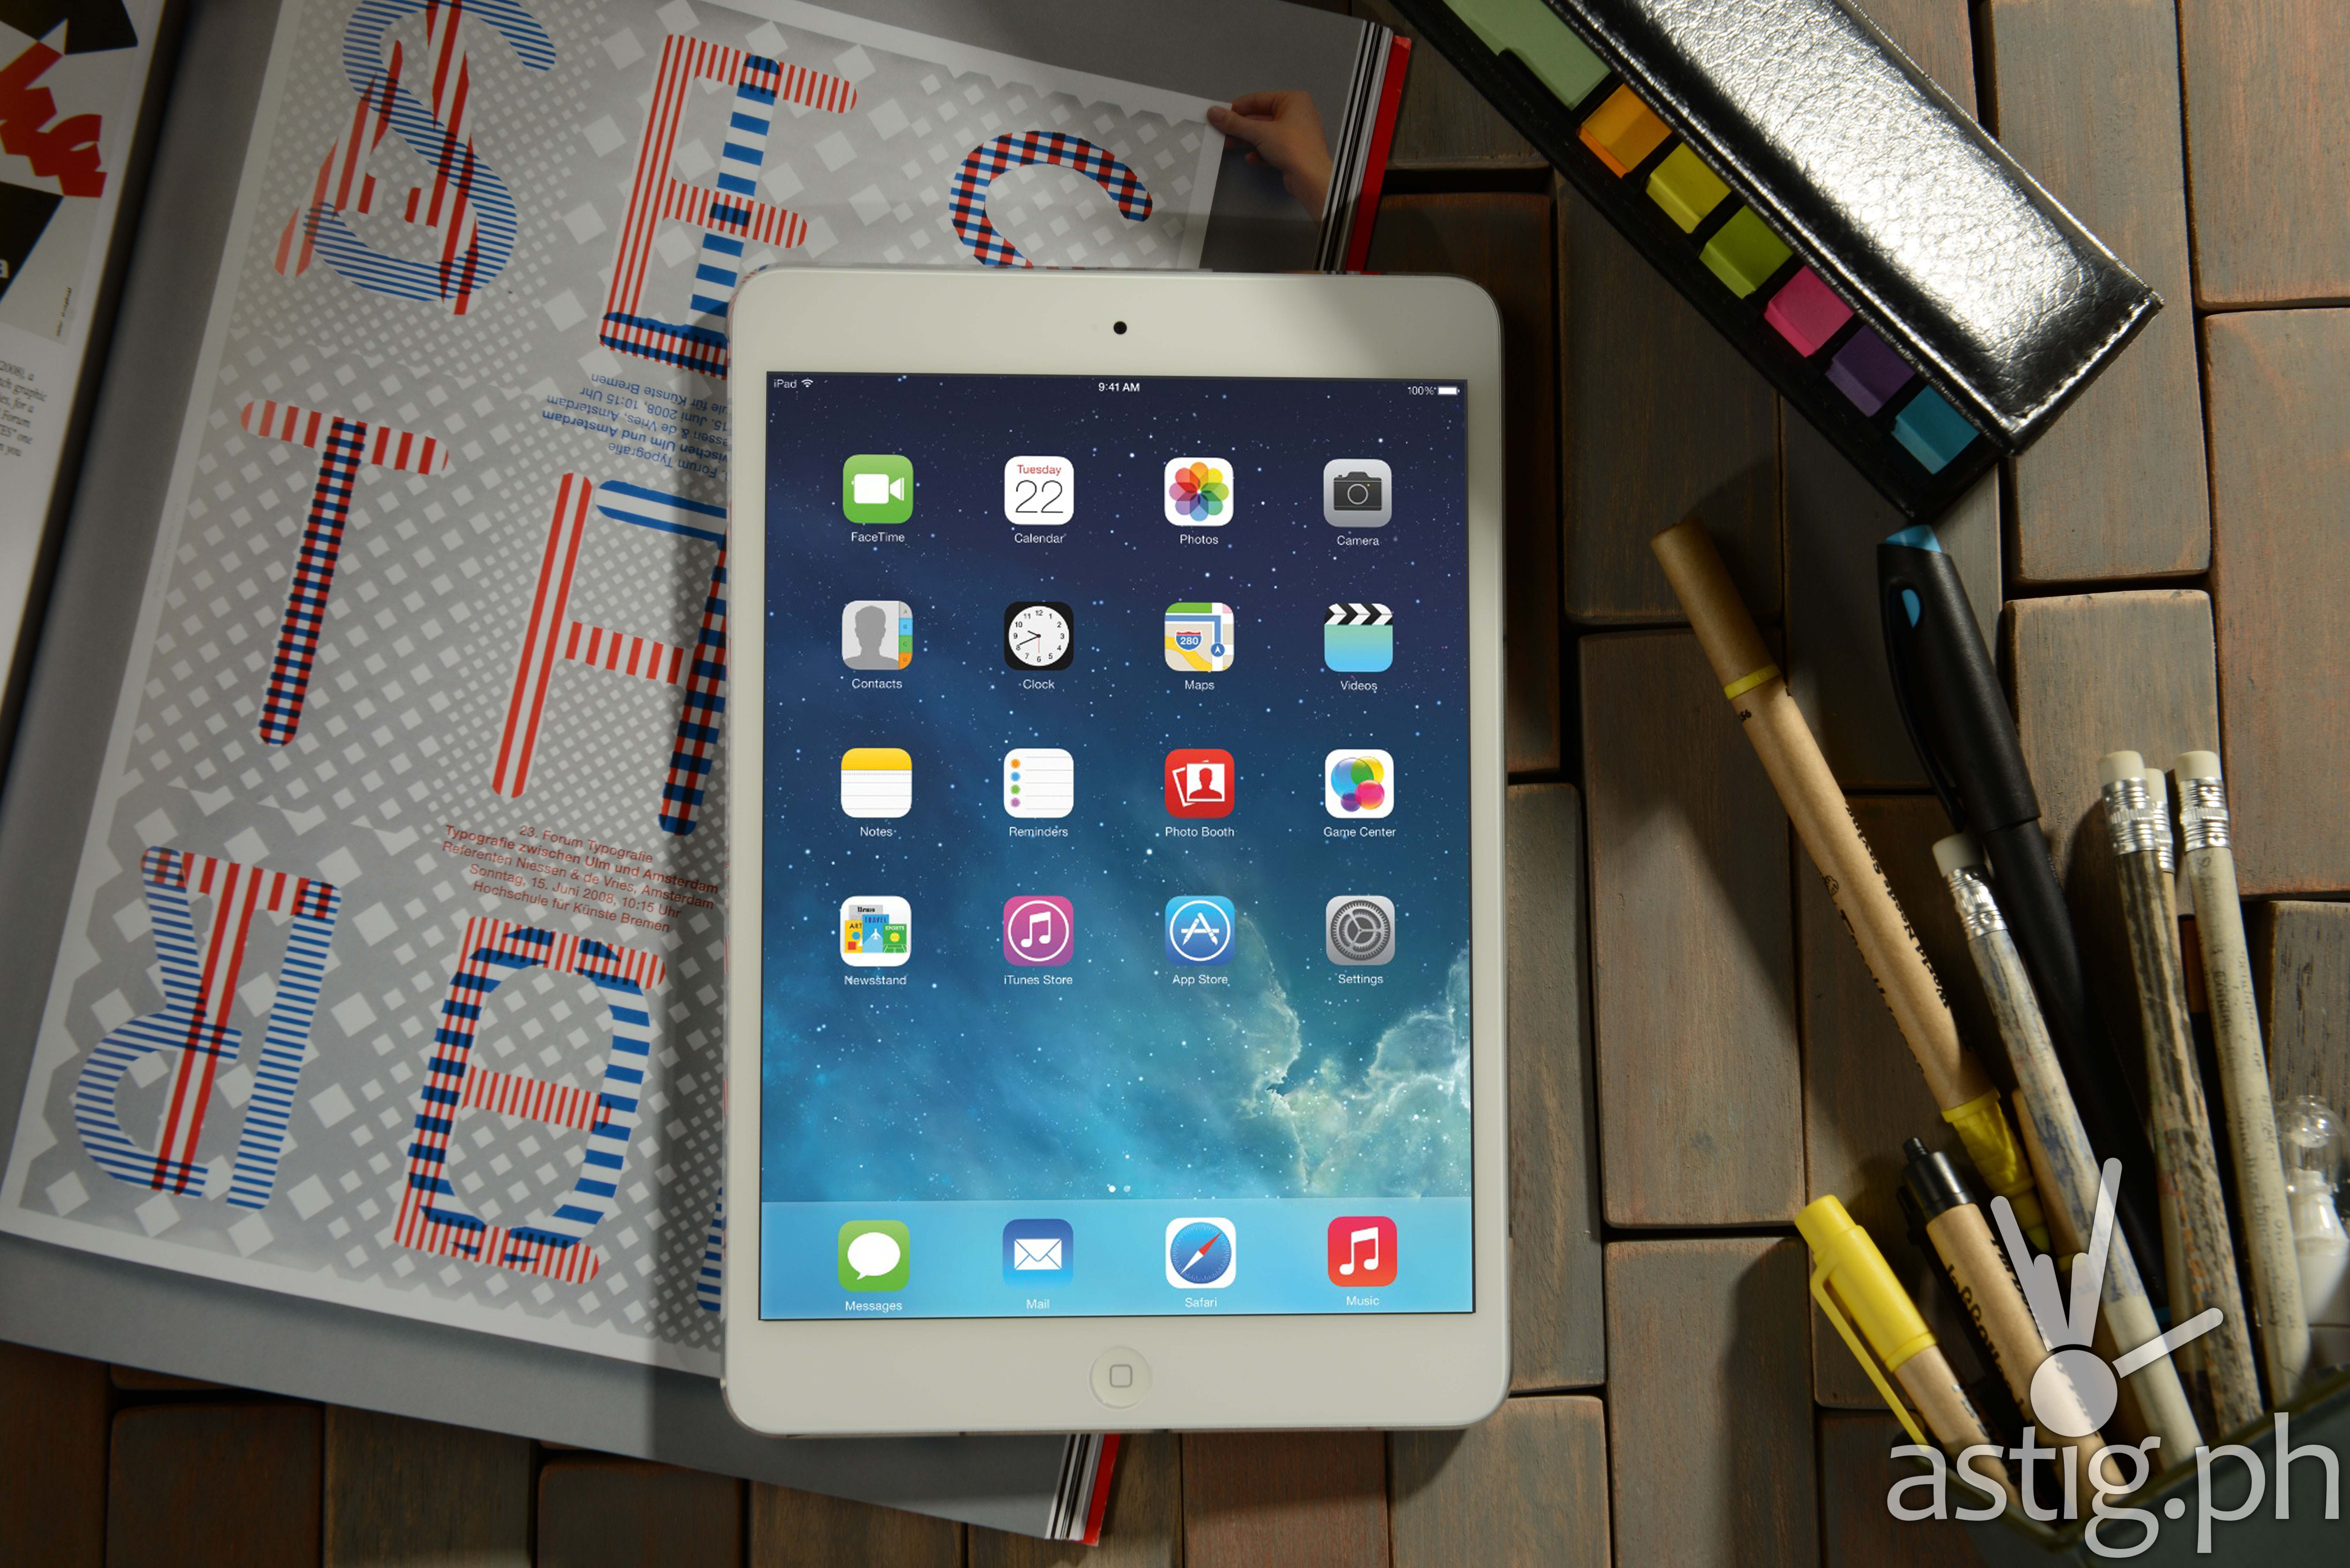 iPad Mini 3 Wifi in 16gb (P17,800), 64gb (P22,000), 128gb (P26,400)